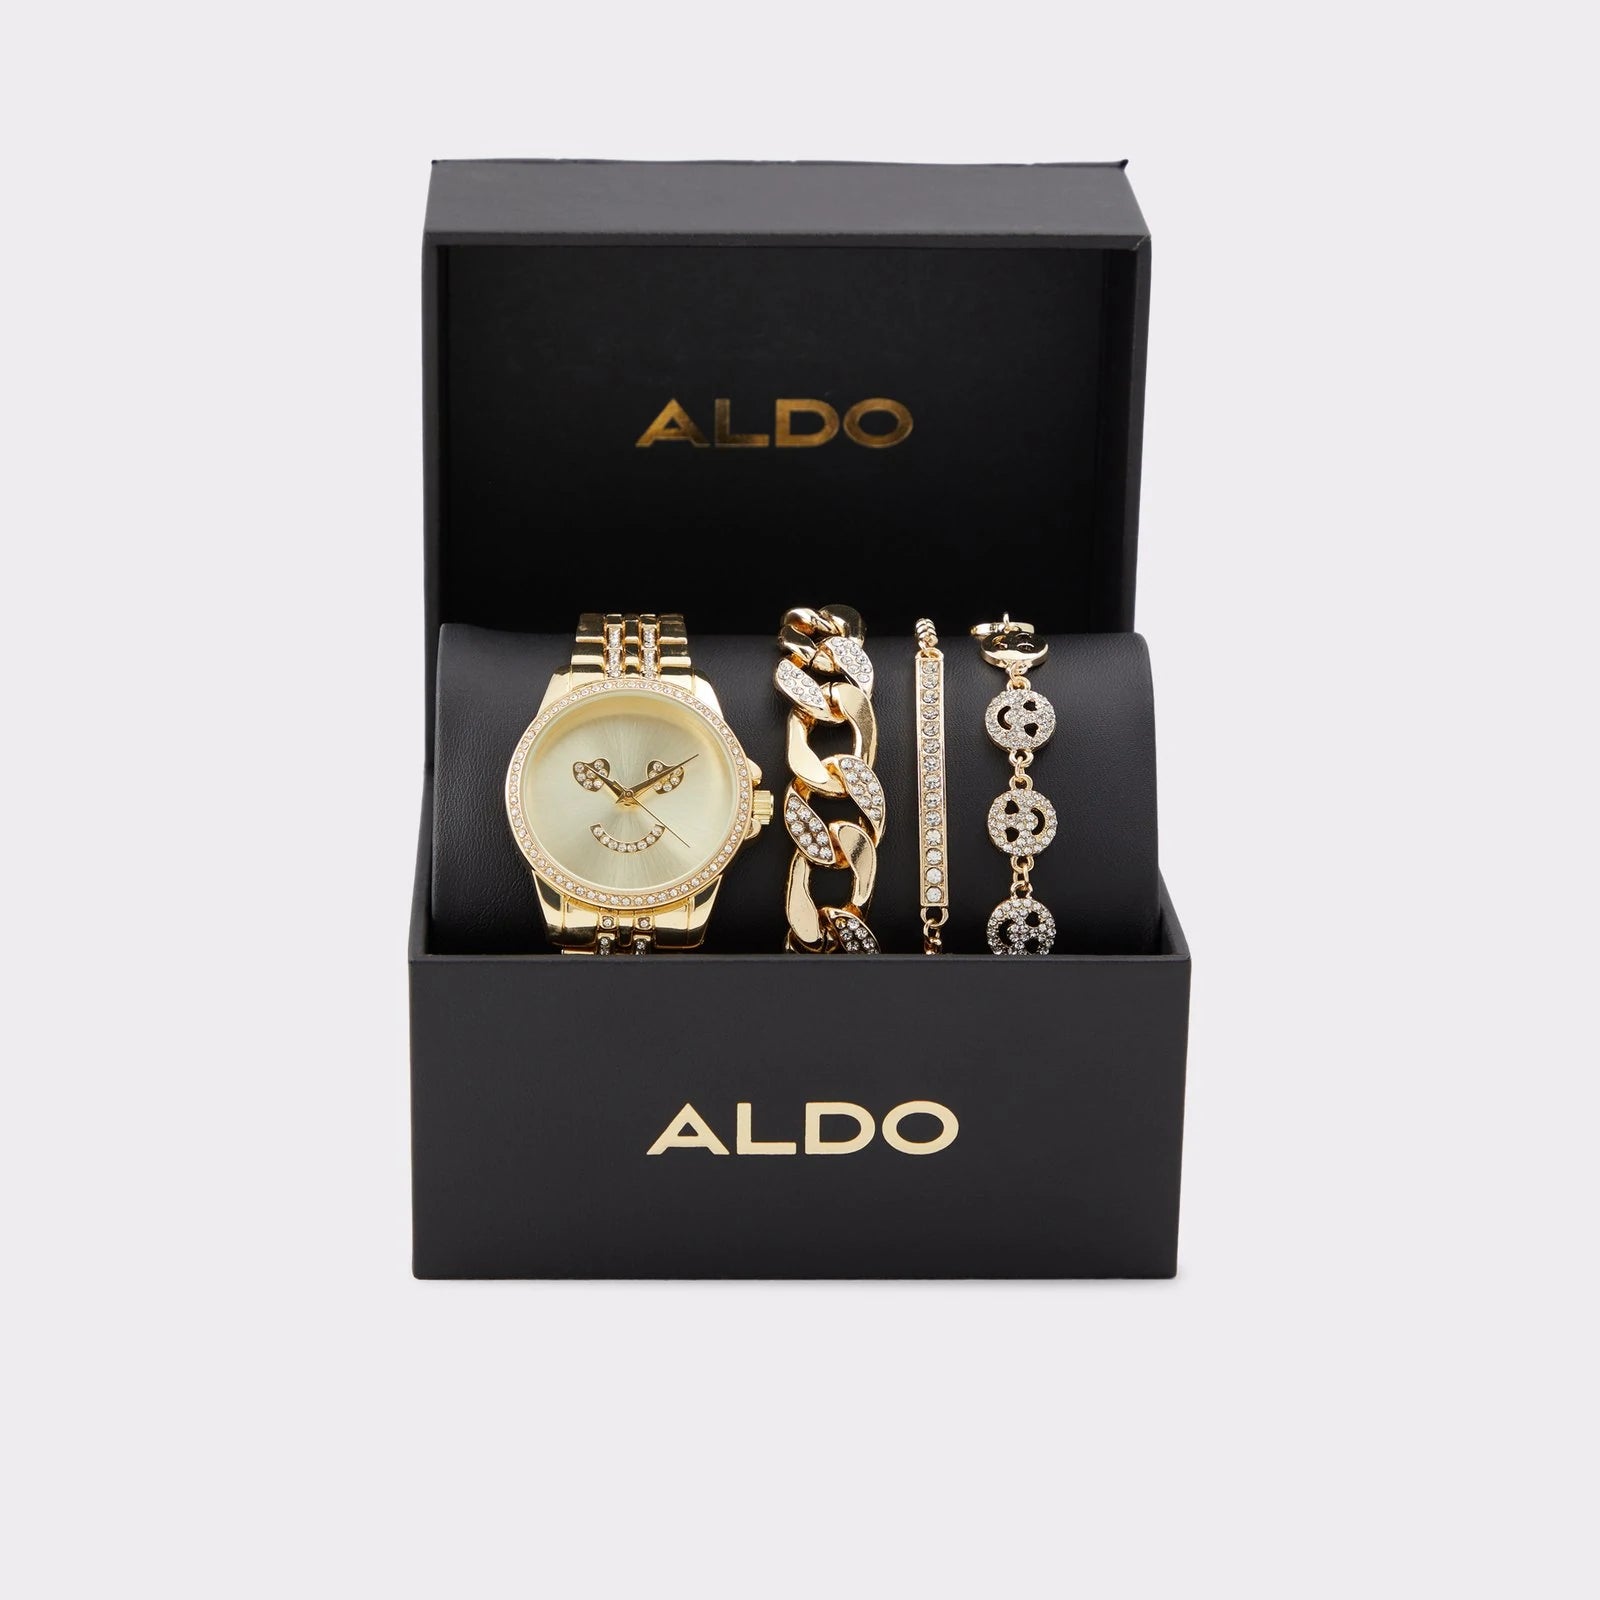 Aldo watches | Accessories watches women, Aldo watches, Aldo accessories